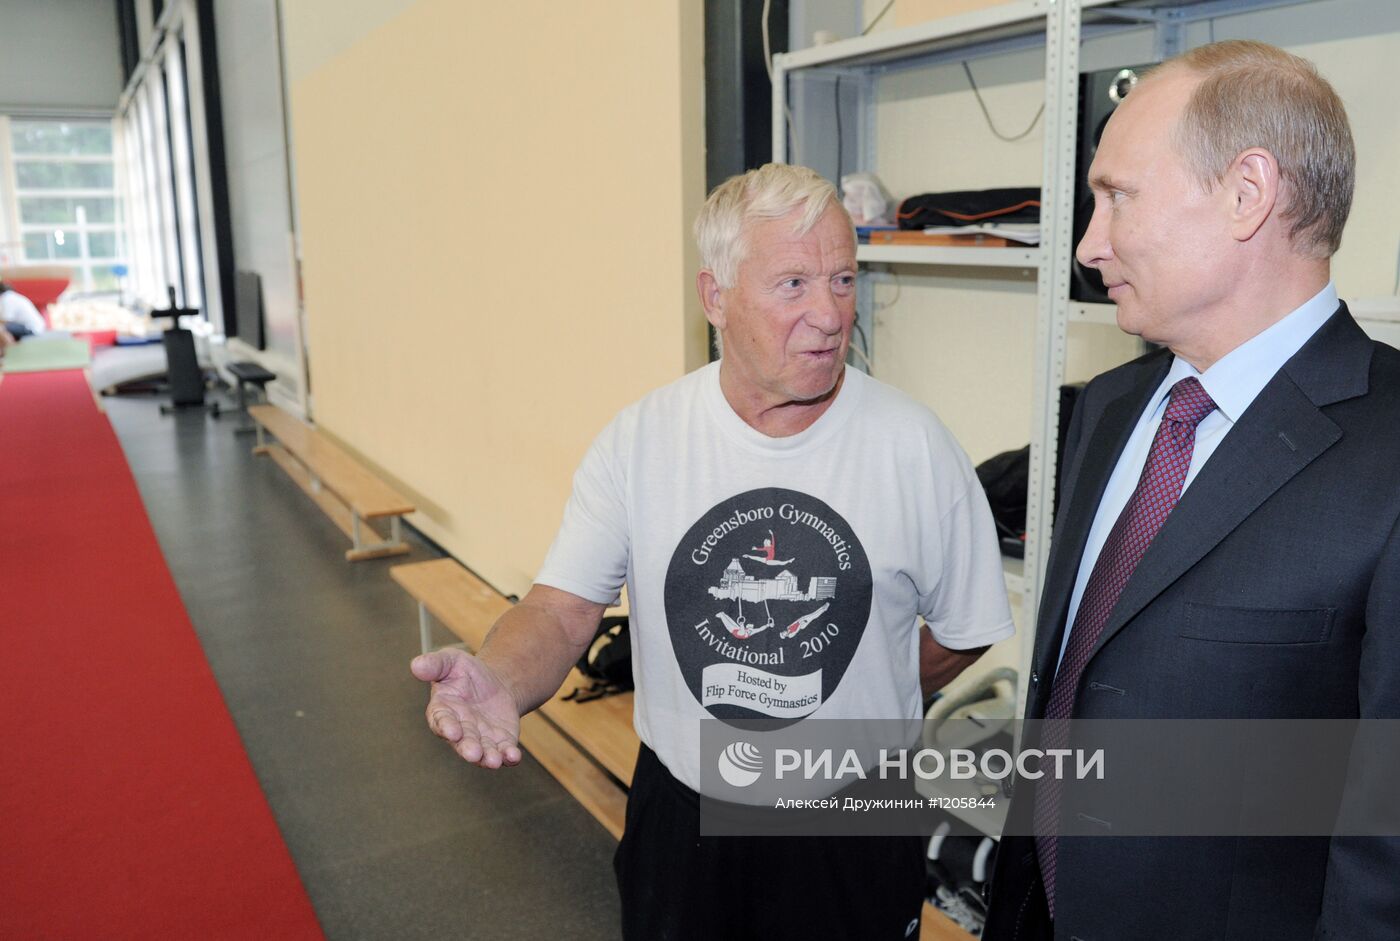 В.Путин посещает центр детско-юношеского творчества "Зеркальный"